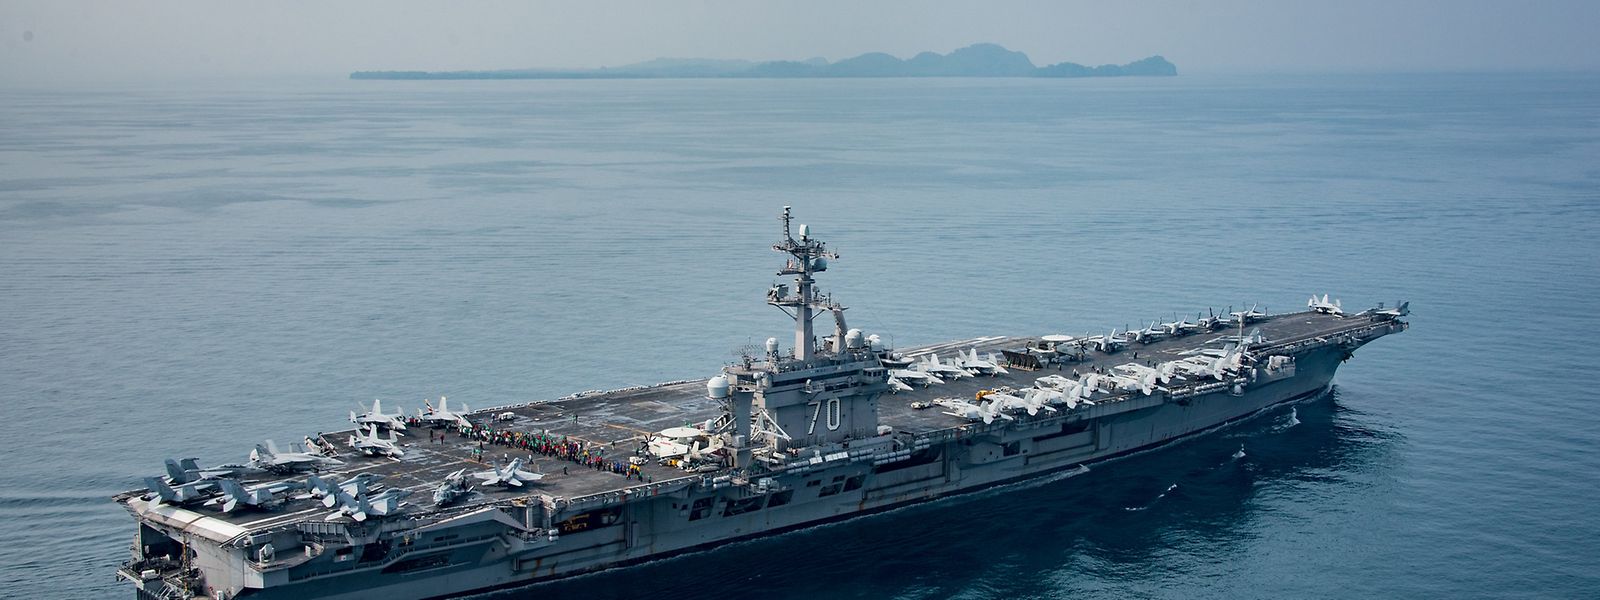 Die USS Carl Vinson ist auf dem Weg nach Korea - allerdings deutlich später als angekündigt.